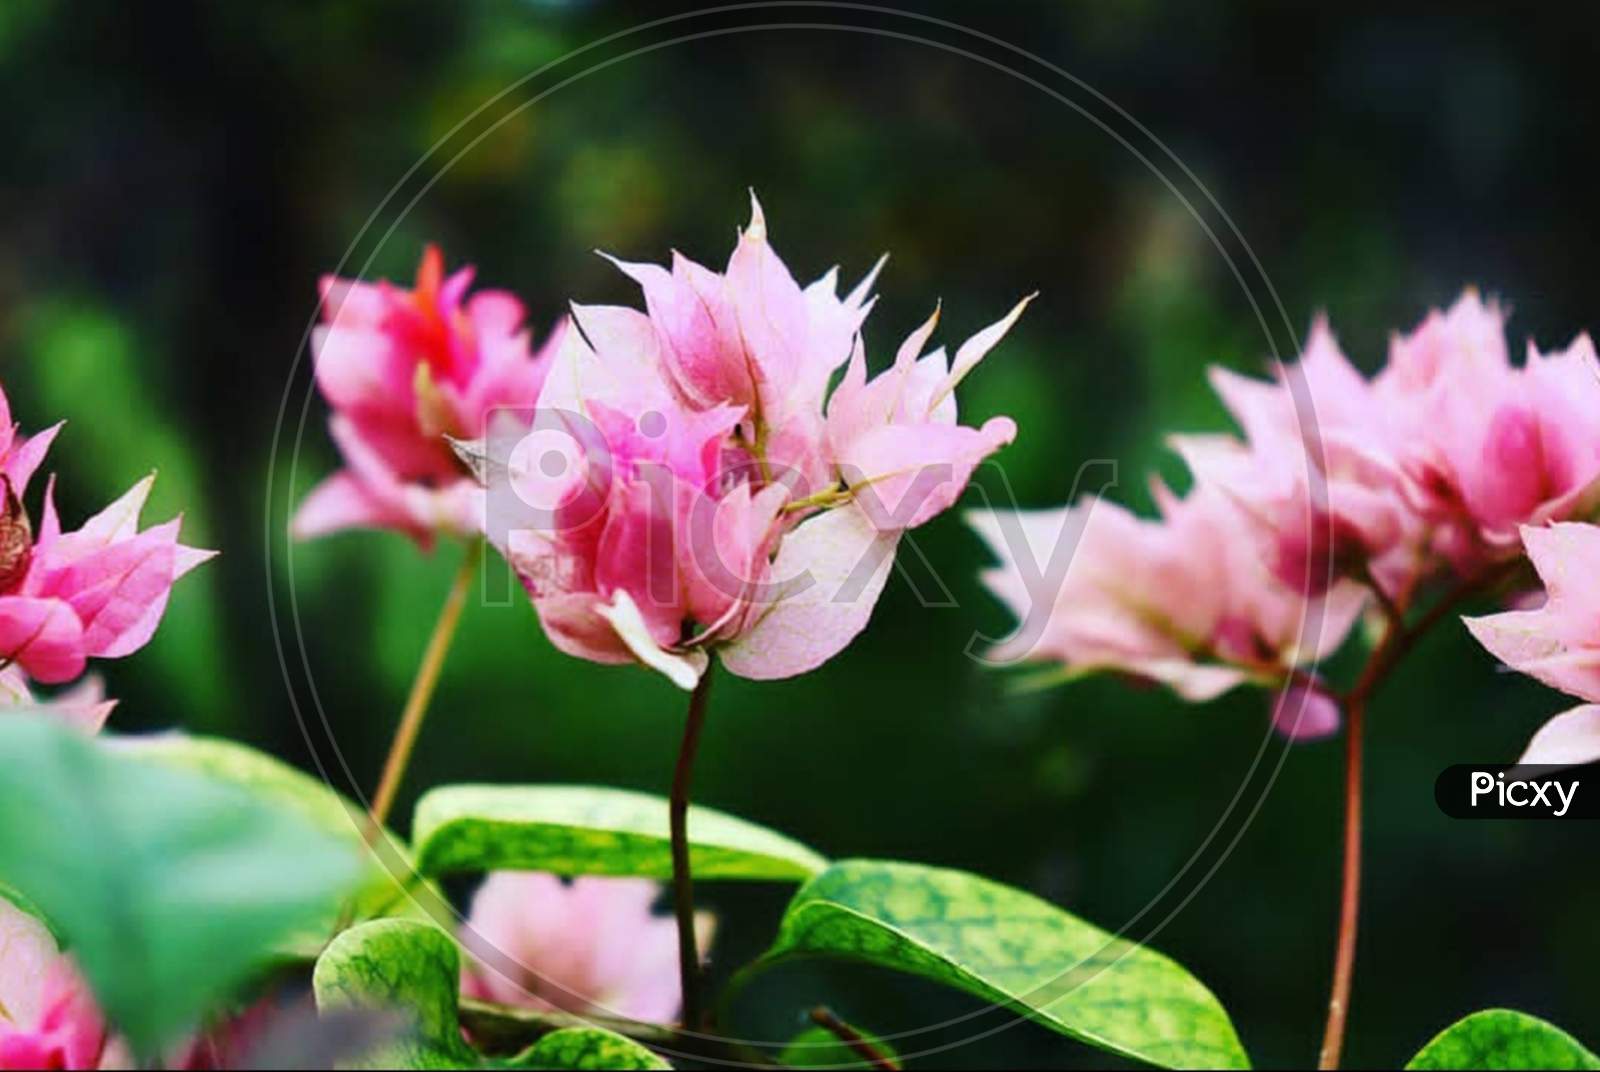 Botany×Remove  Tulip×Remove  Pink×Remove  Flowering plant×Remove  Plant×Remove  Flower×Remove  Siam tulip×Remove  Aquatic plant×Remove  Petal×Remove  Spring×Remove